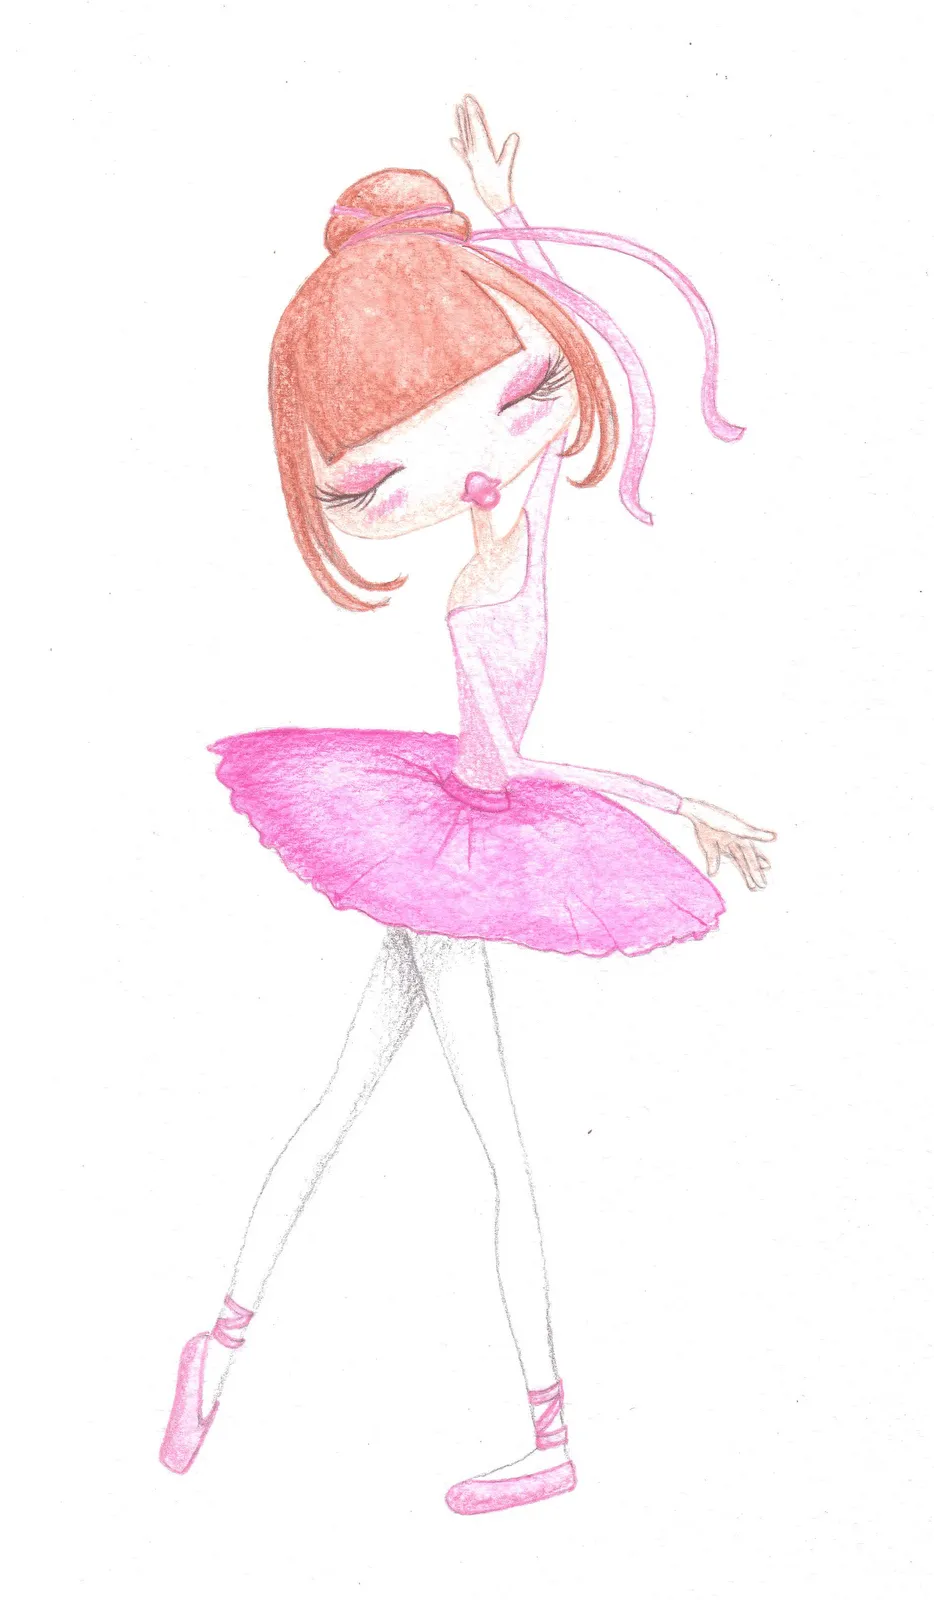 bailarinas - Buscar con Google | Bailarinas | Pinterest | Dibujo ...